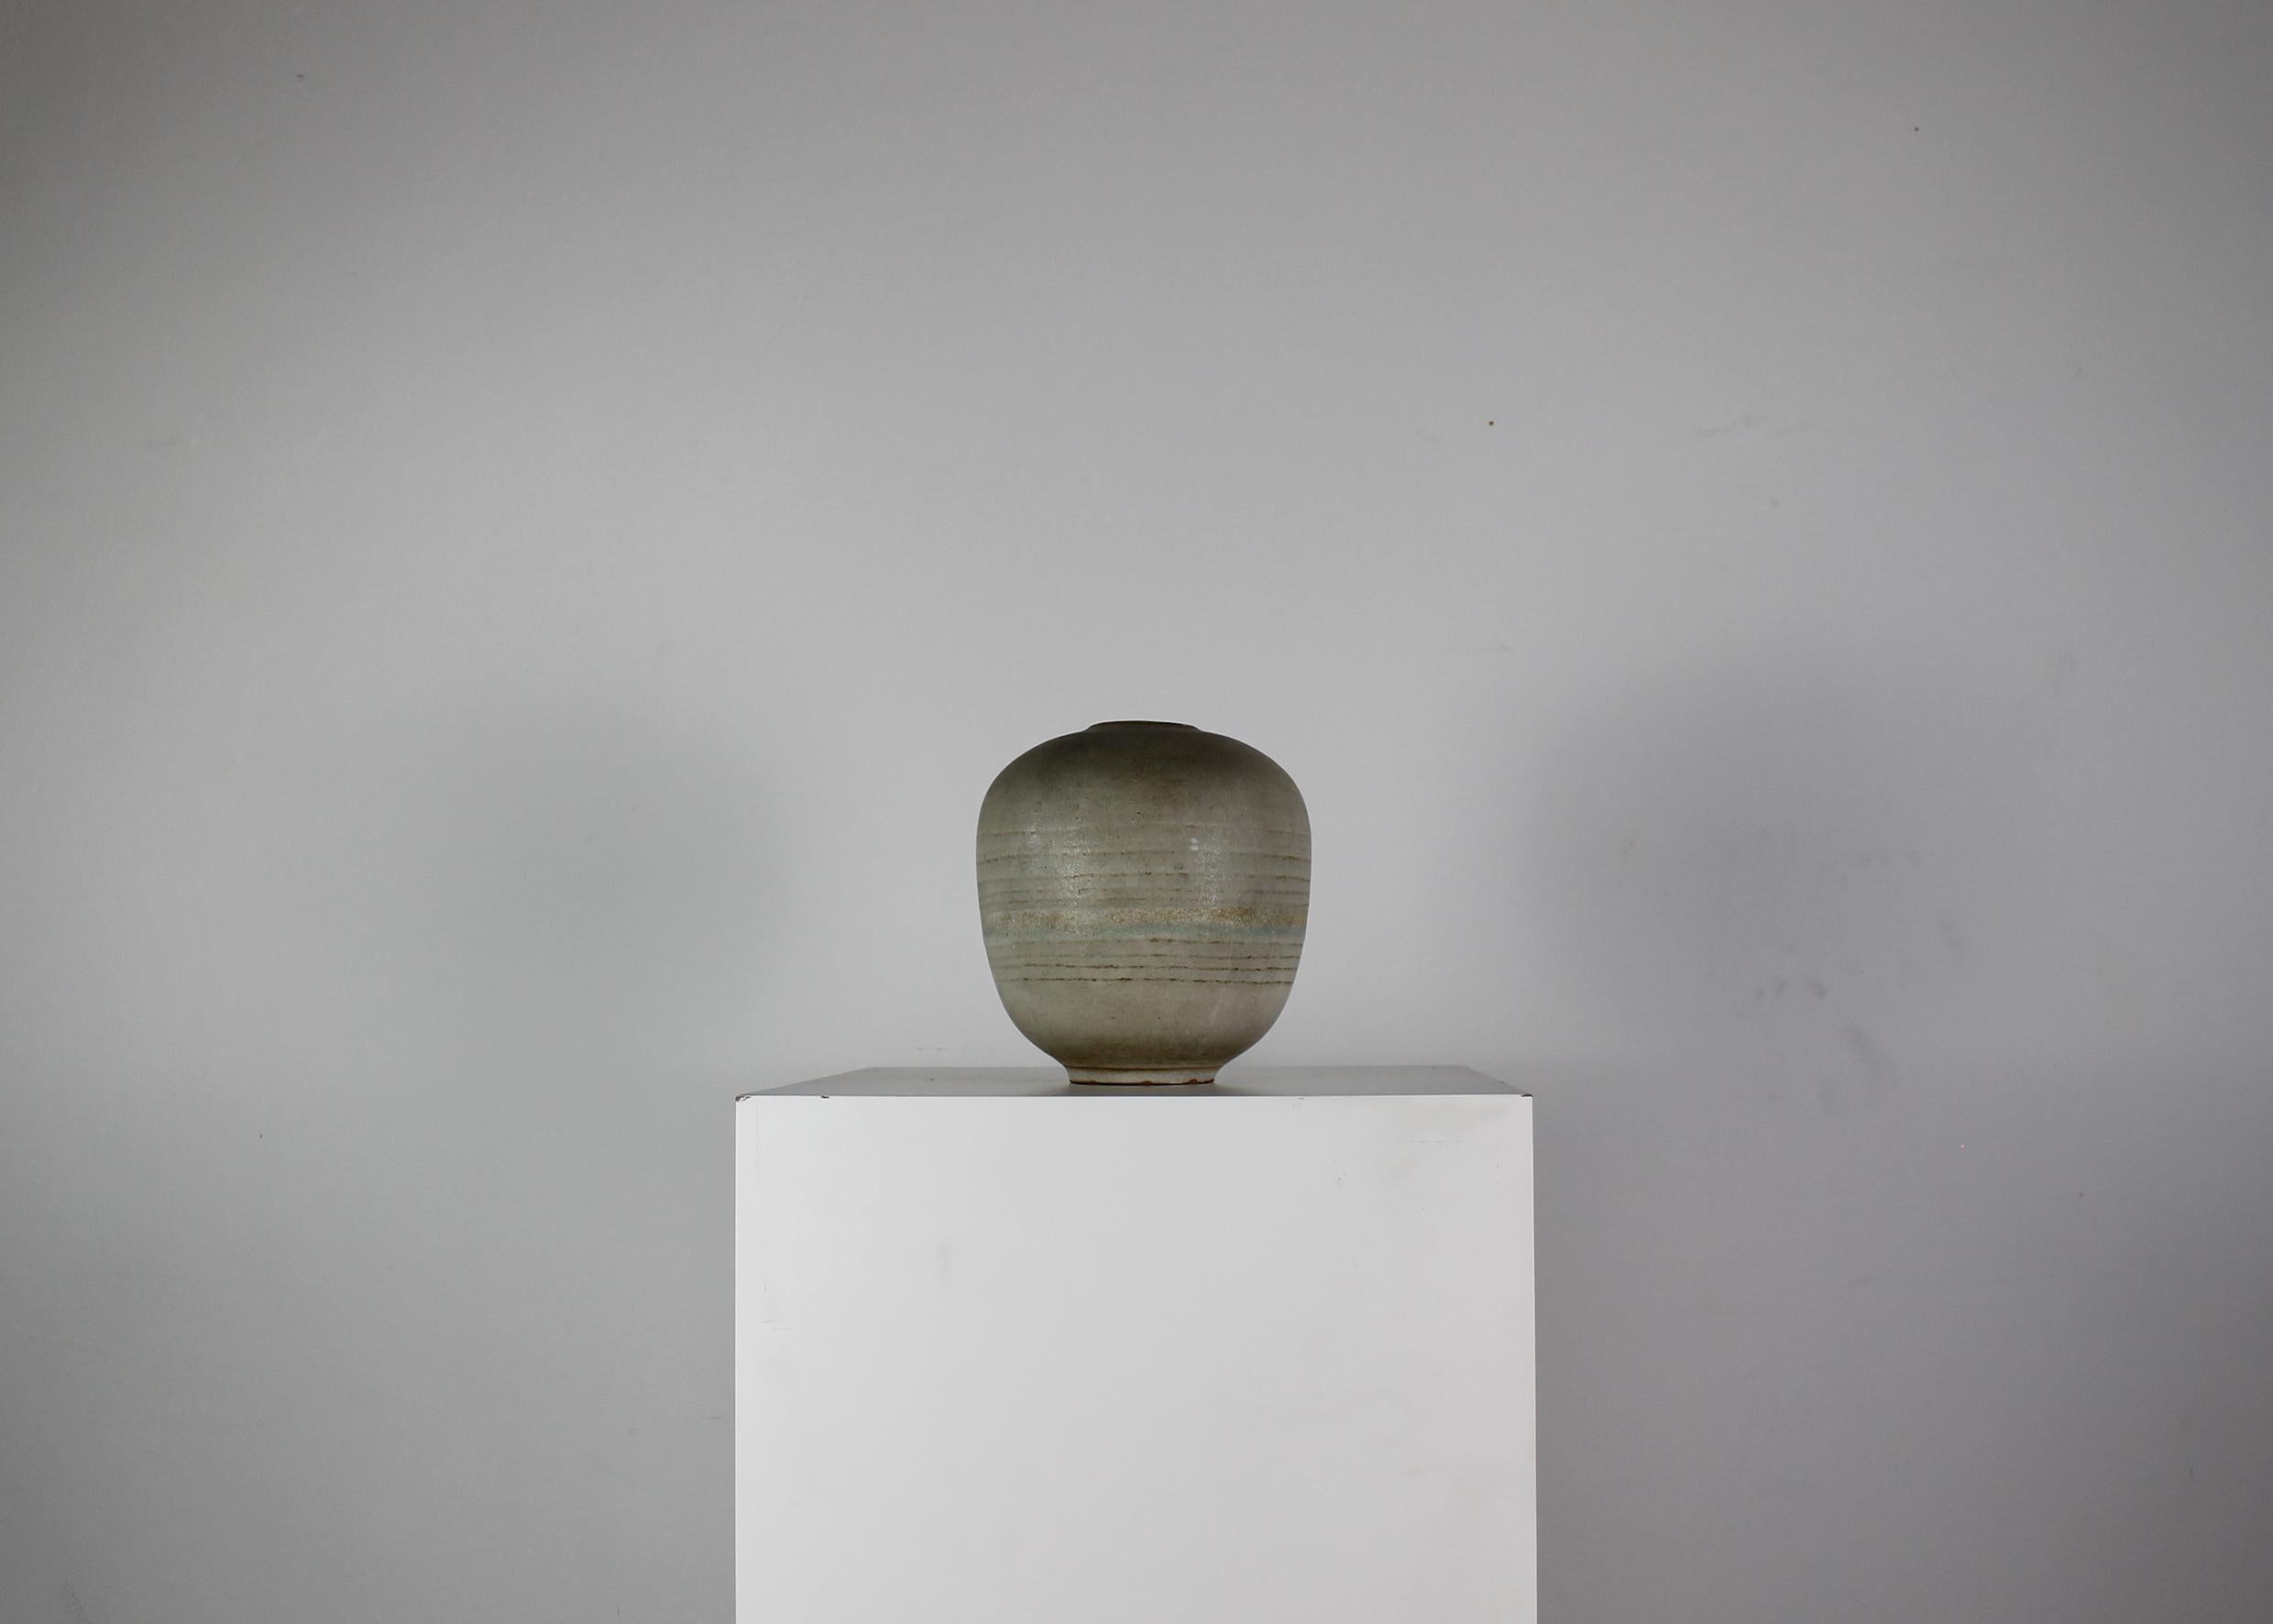 Vase décoratif réalisé dans un grès gris chaud avec des décorations en bandes, conçu et fabriqué par Carlo Zauli dans les années 1960. 

Signature gravée visible sous la base.

Après avoir remporté les principaux prix consacrés à l'art céramique